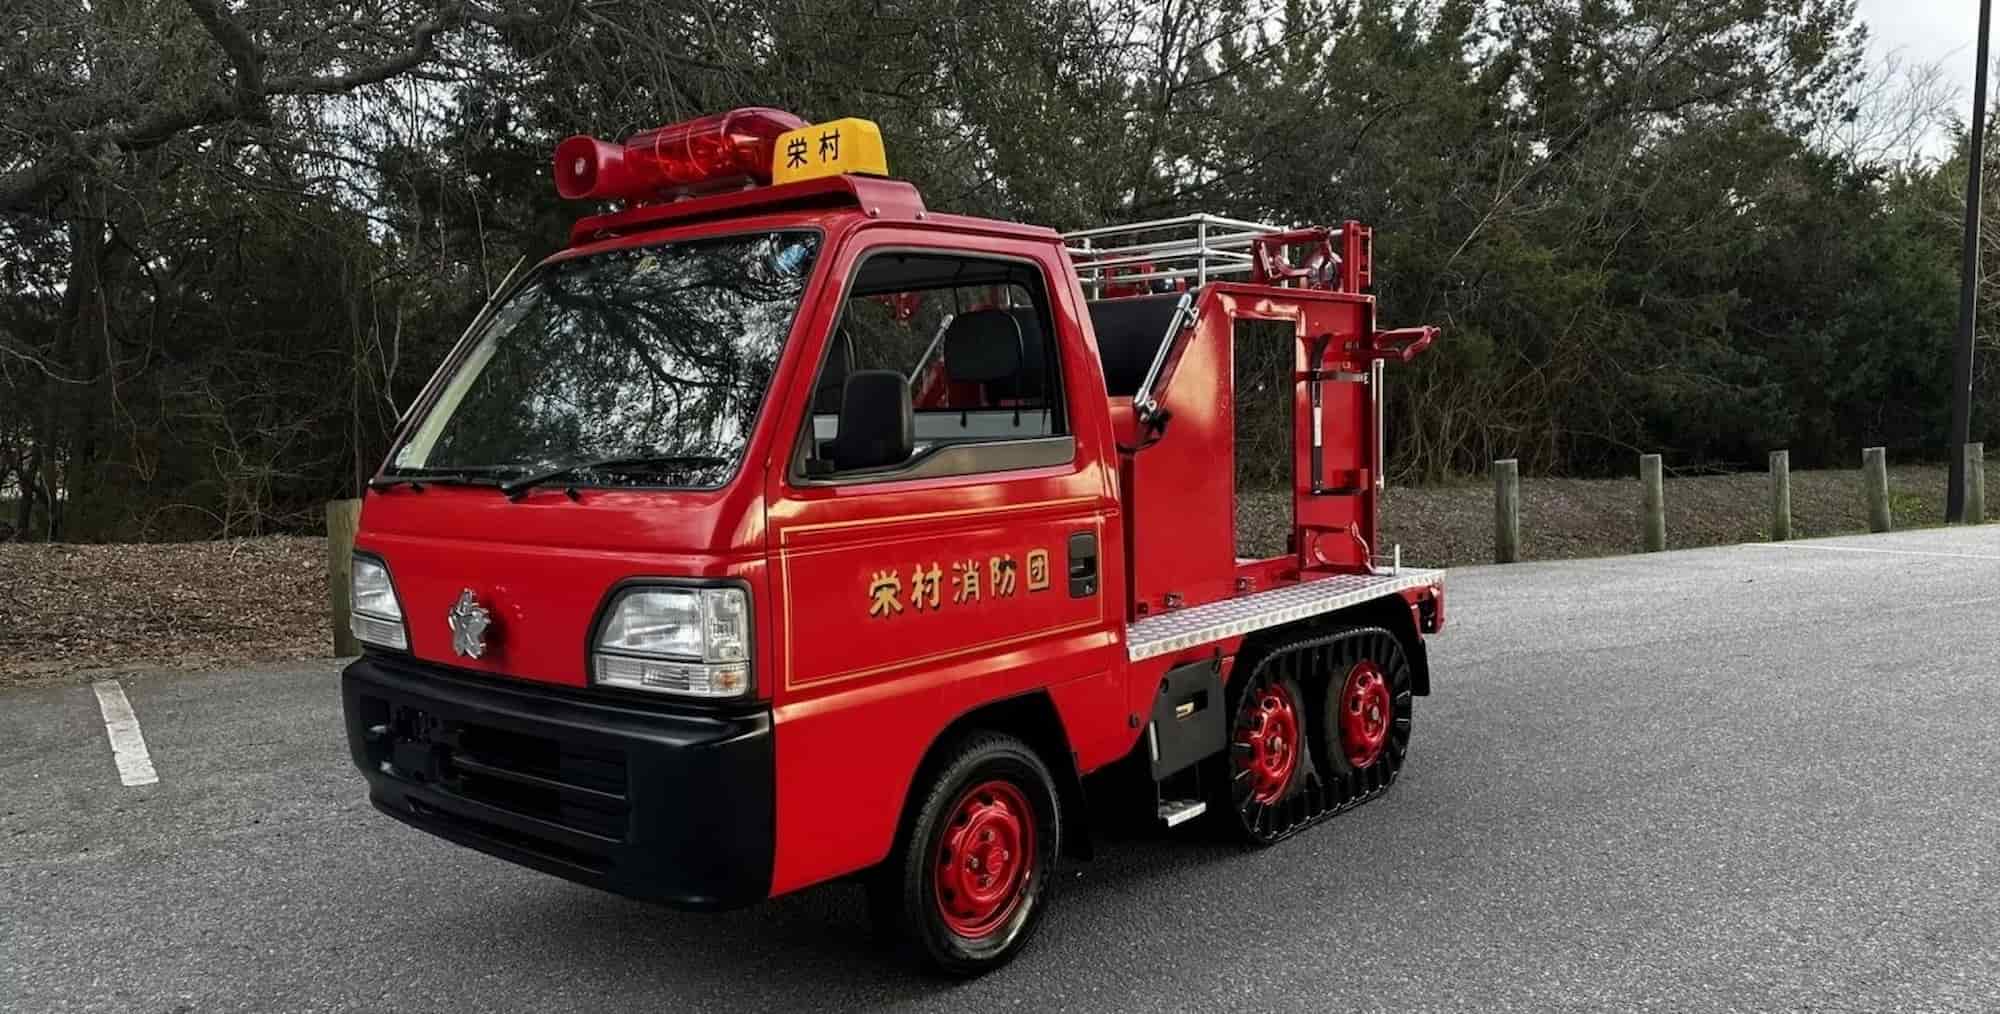 самый маленький пожарный автомобиль